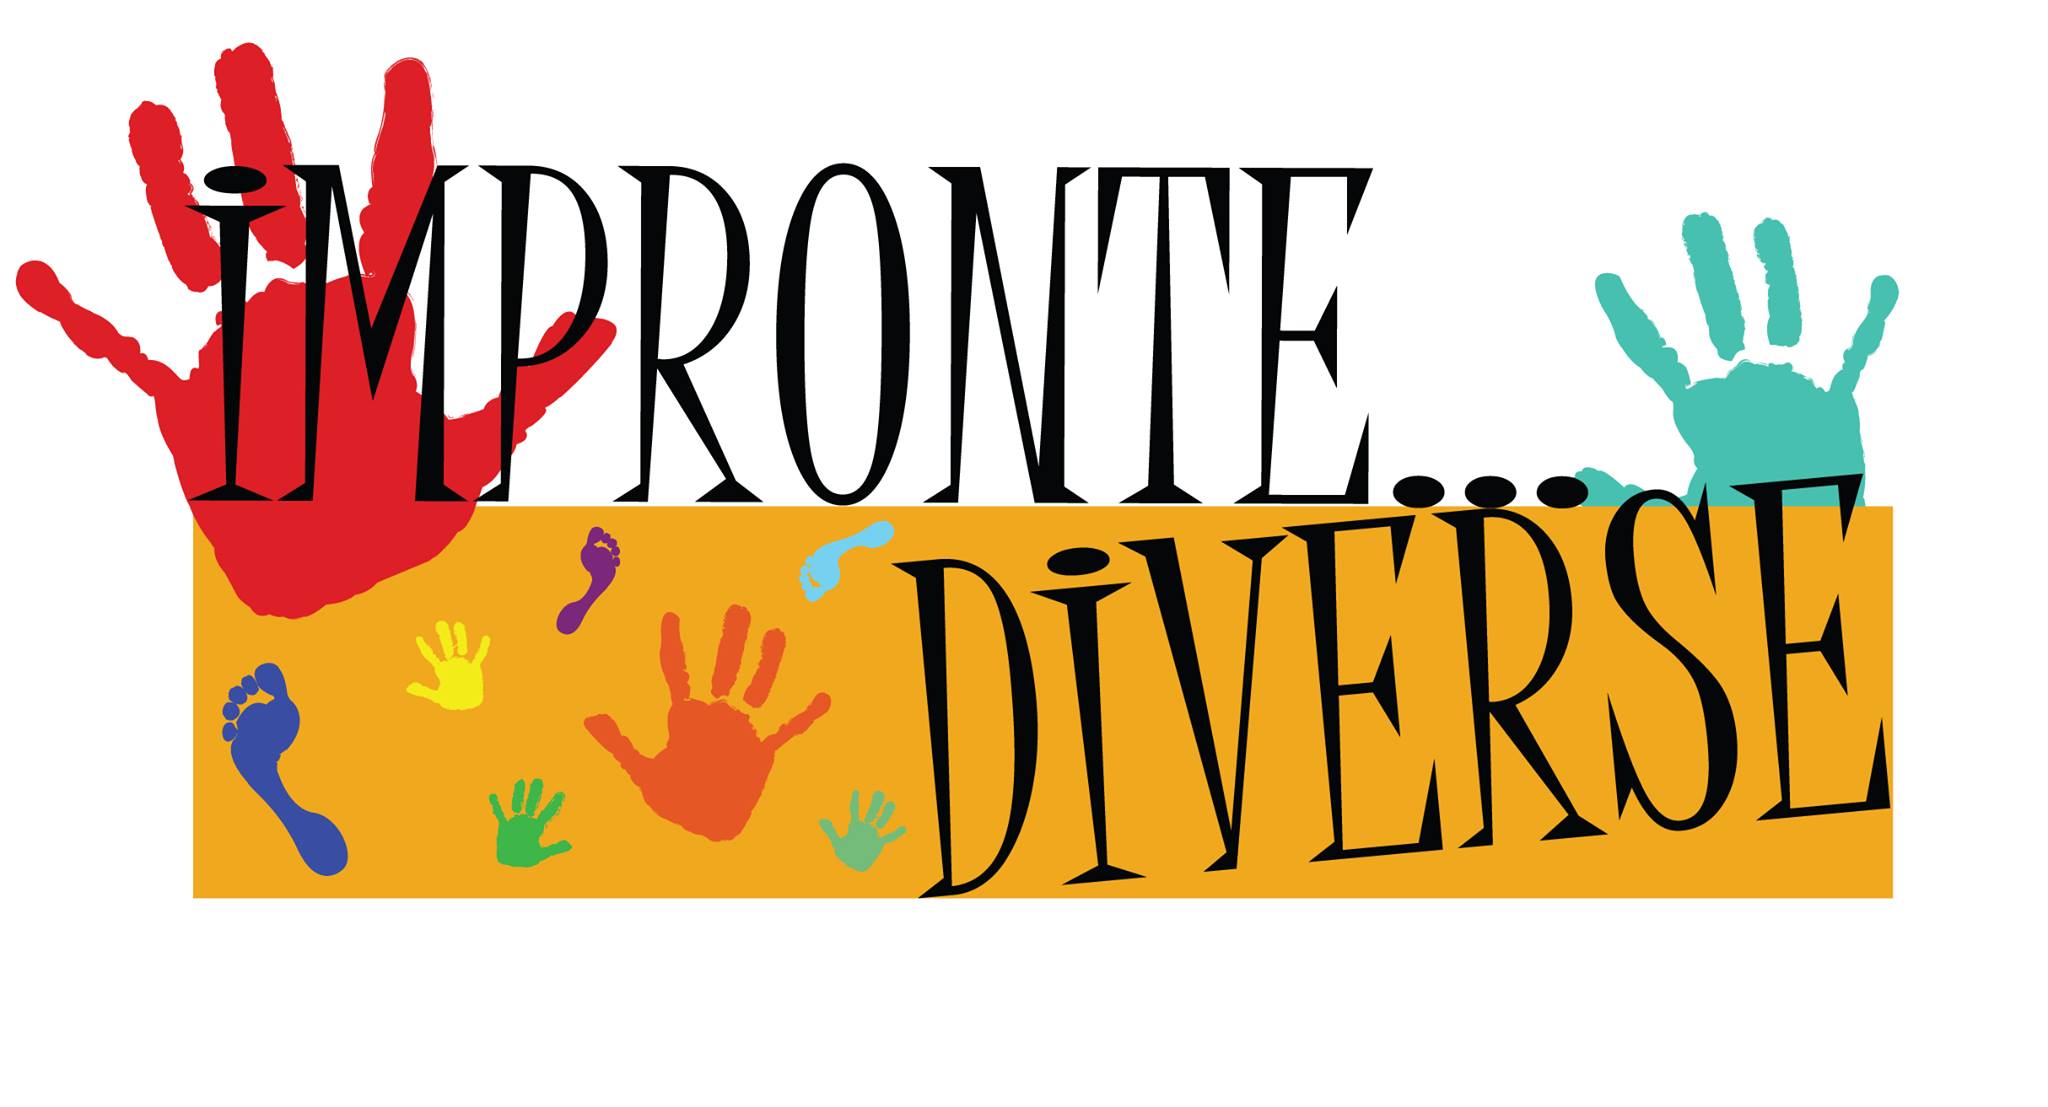 Impronte Diverse: Progetto Inclusione Sociale